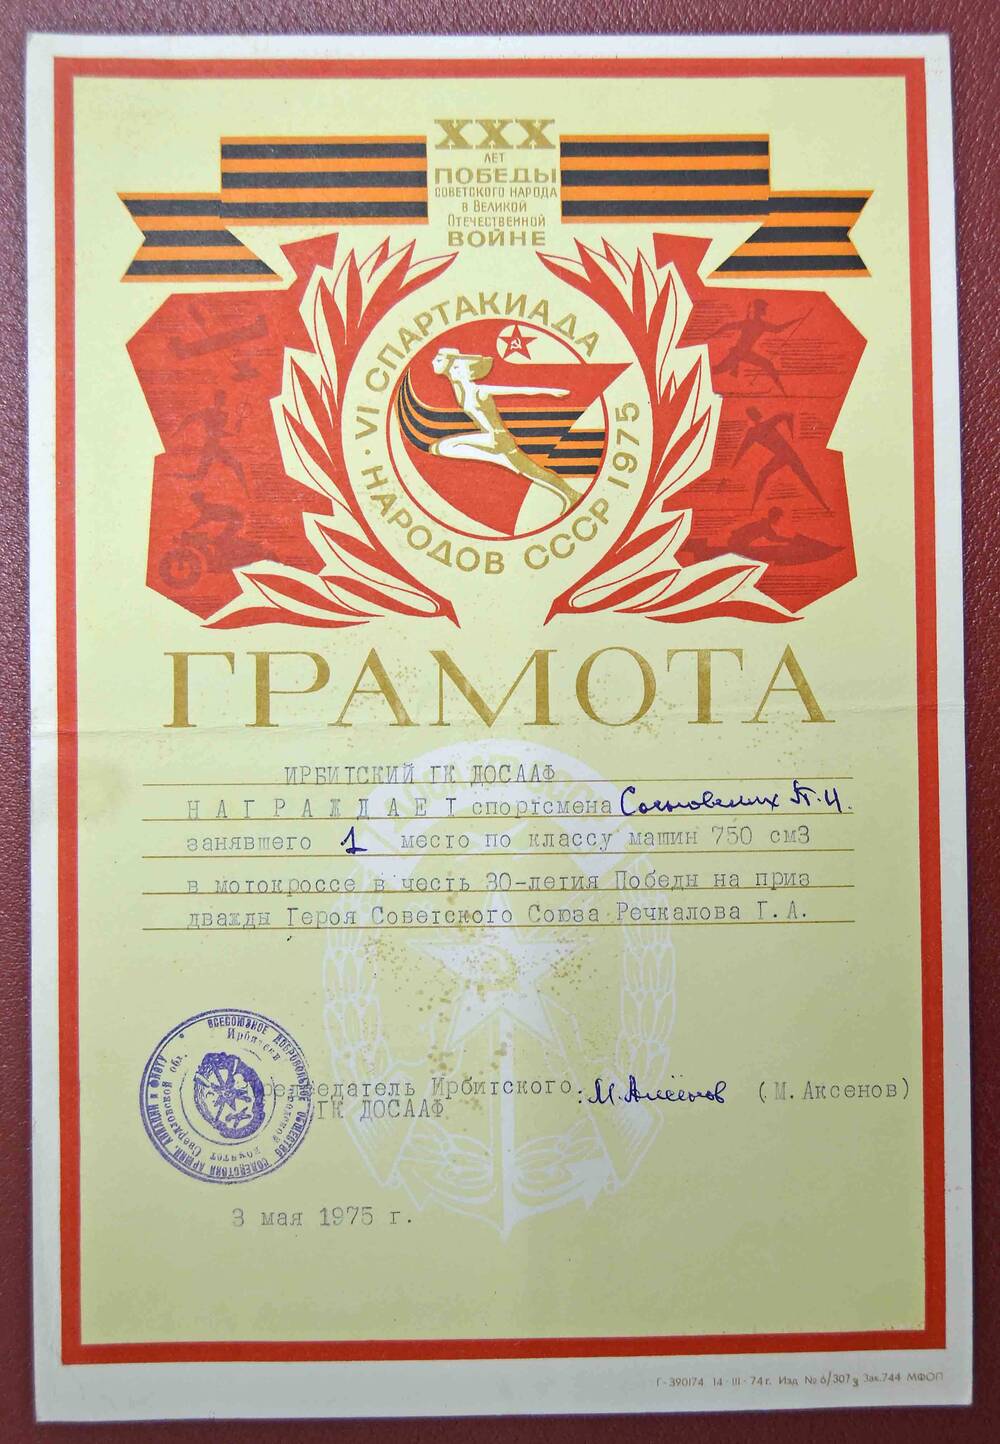 Грамота «VI Спартакиада народов СССР 1975» Сосновских П.И.